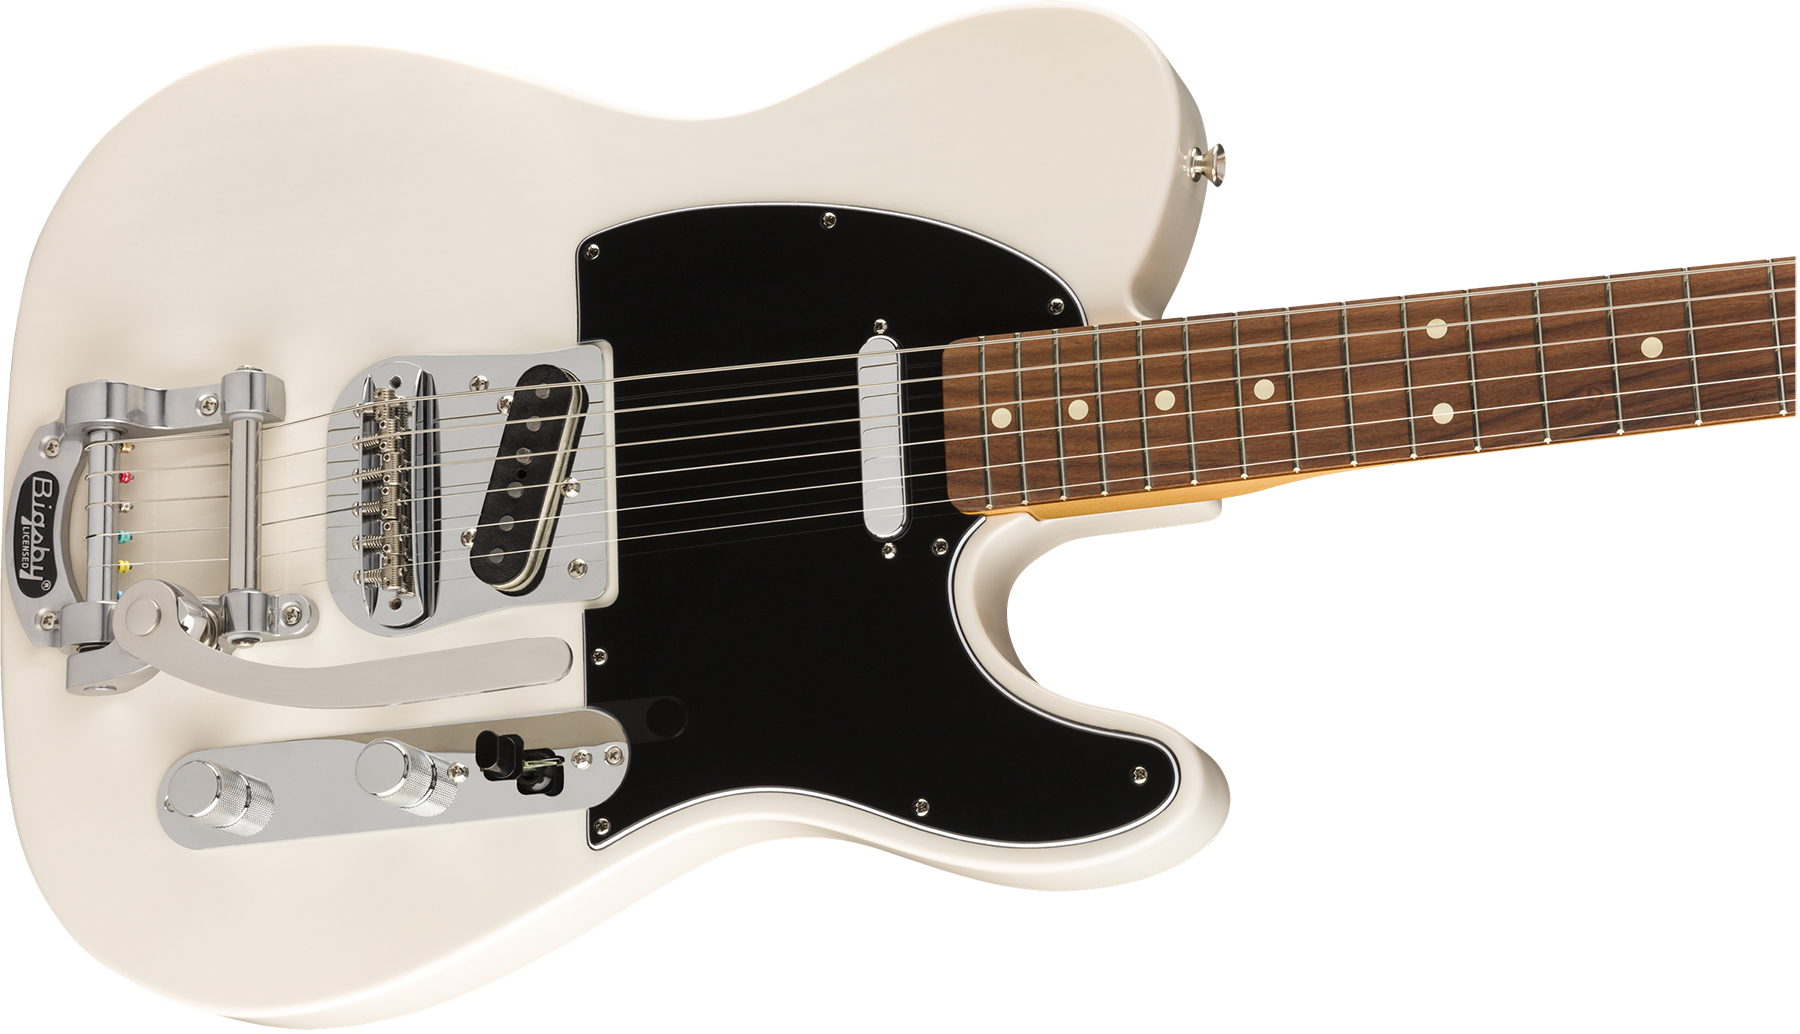 Fender Tele 60s Bigsby Vintera Vintage Mex Pf - White Blonde - Televorm elektrische gitaar - Variation 2